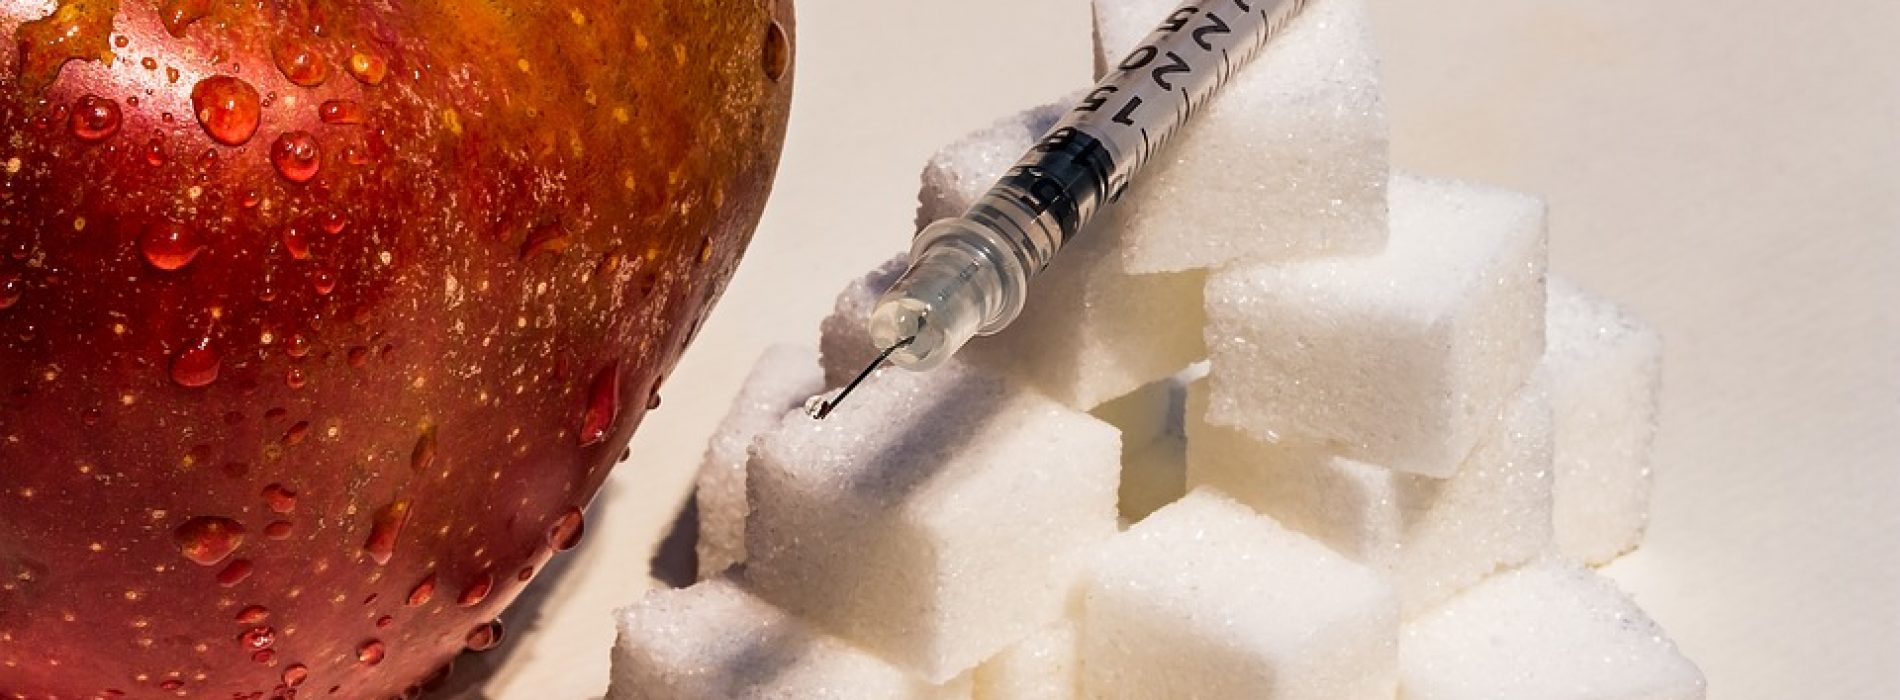 Insuline verlagen zonder geneesmiddelen beschermt tegen diabetes